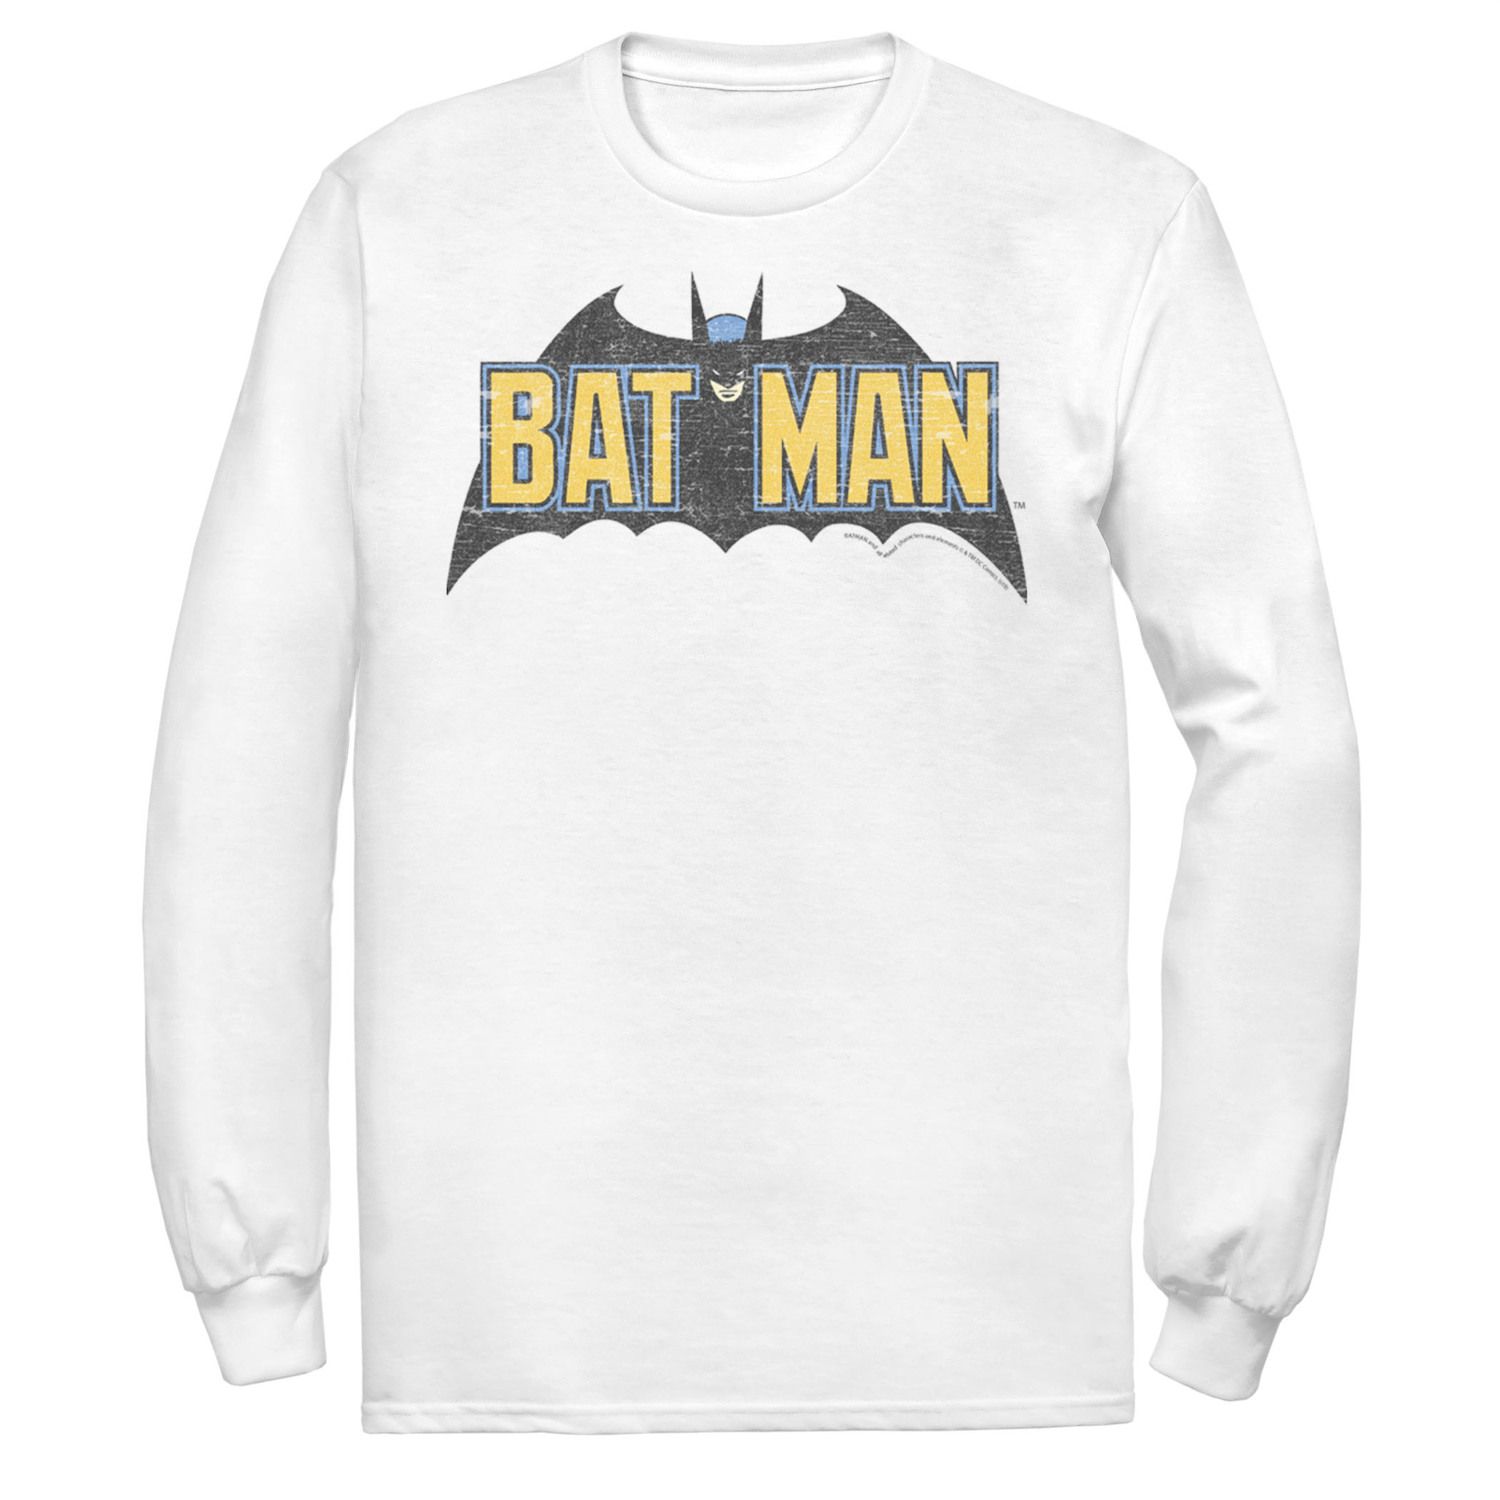 Мужская футболка с винтажным текстовым логотипом DC Comics Batman